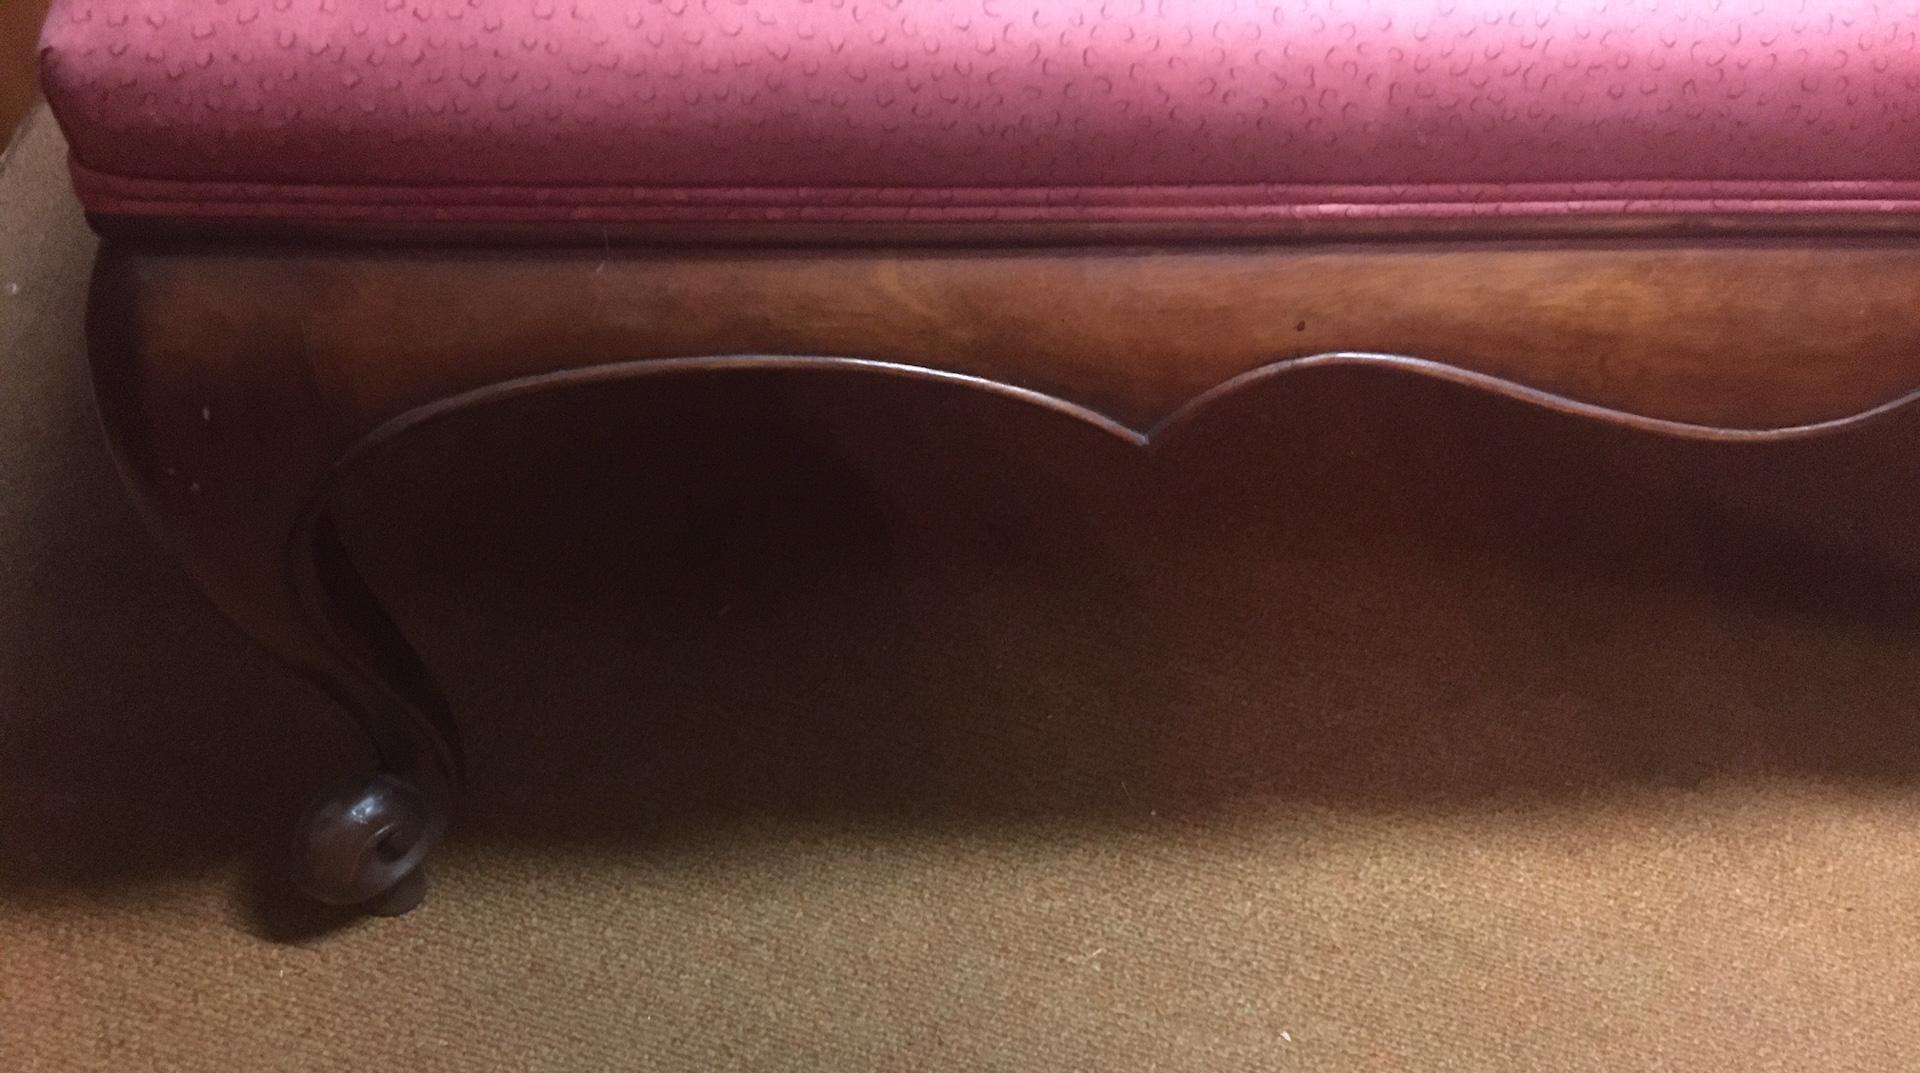 Ce gracieux banc long de style Queen Anne présente une assise rembourrée reposant sur des pieds cabriole en noyer sculpté se terminant par des pieds à volutes, 20e siècle.
Une pièce idéale pour le bout du lit.
